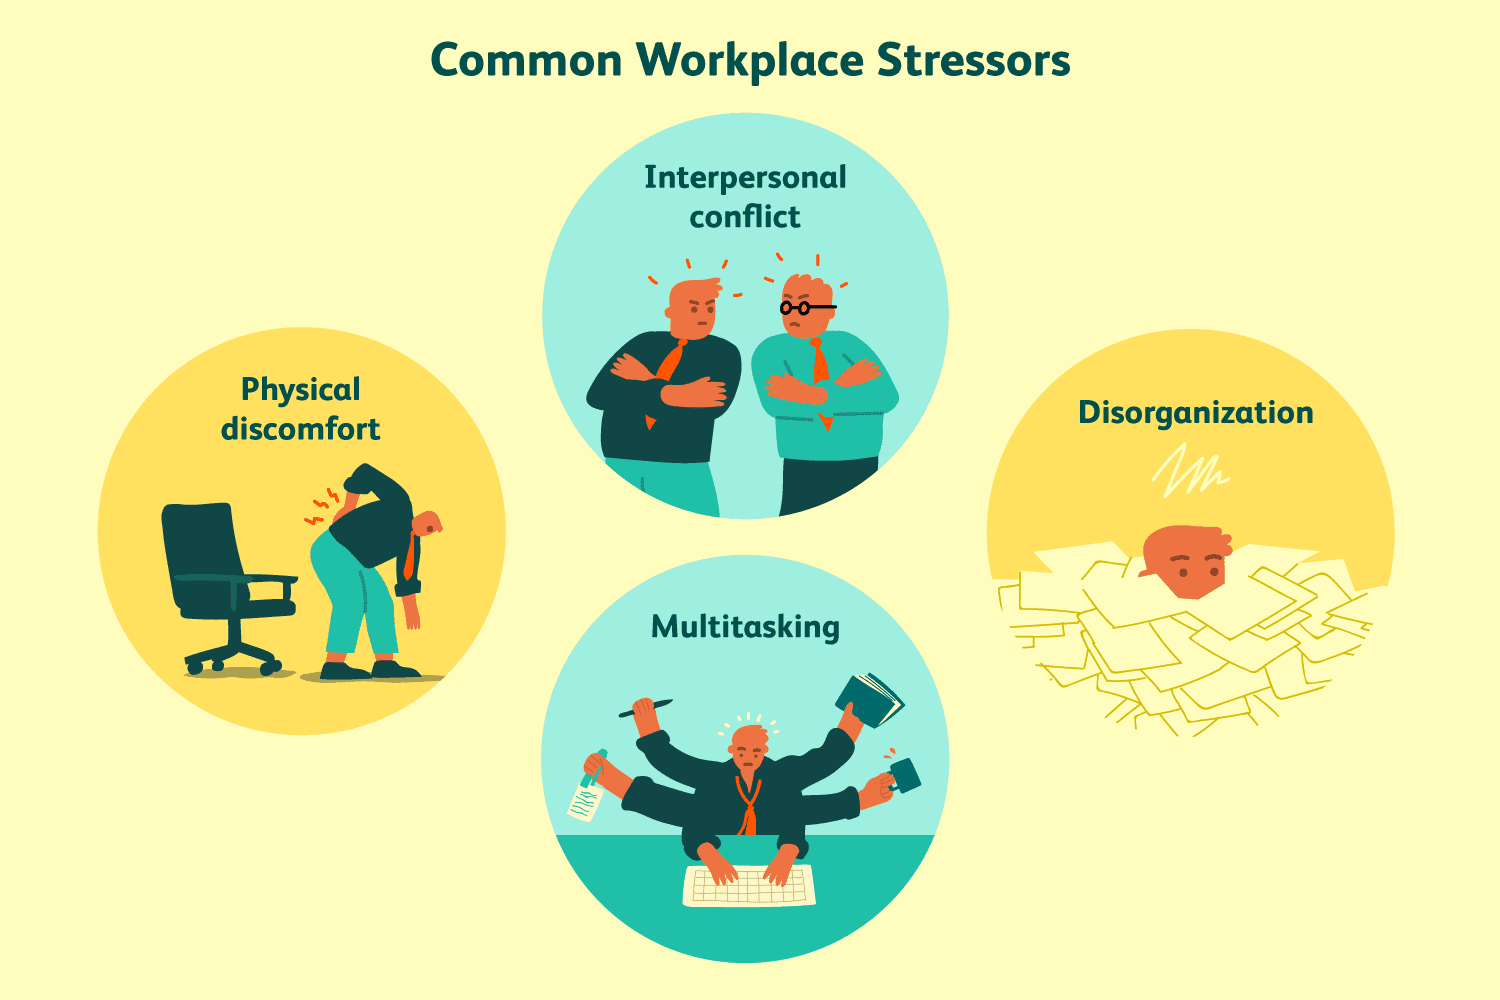 Workplace stress